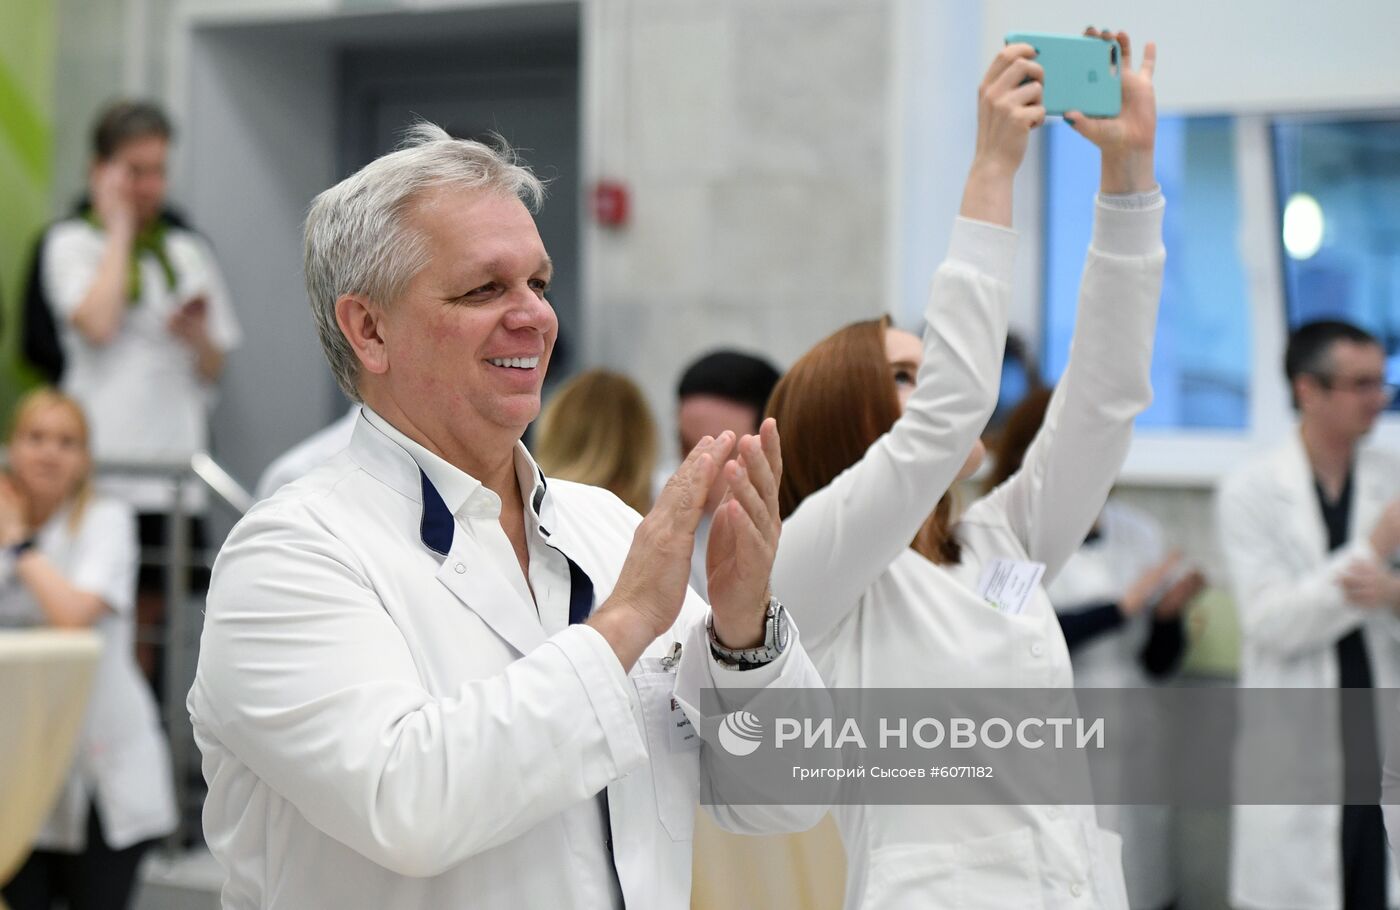 Открытие нового травматологического корпуса ГКБ № 67 в Москве